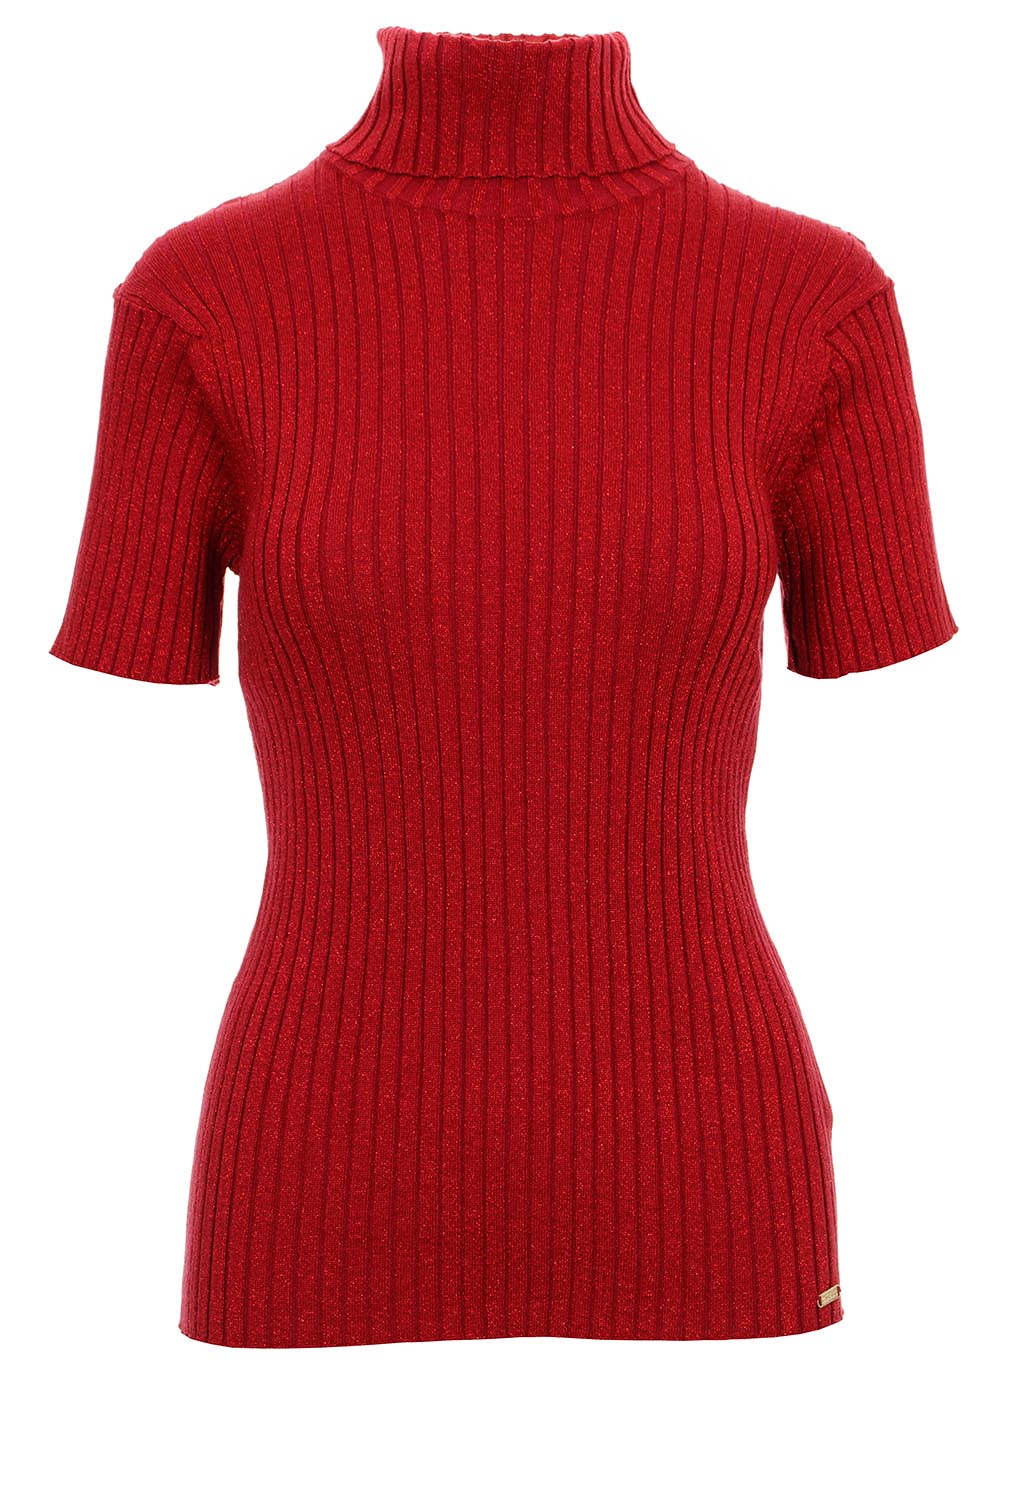 Guess dámské úpletové tričko s rolákem Jolene vínově červené Velikost: L